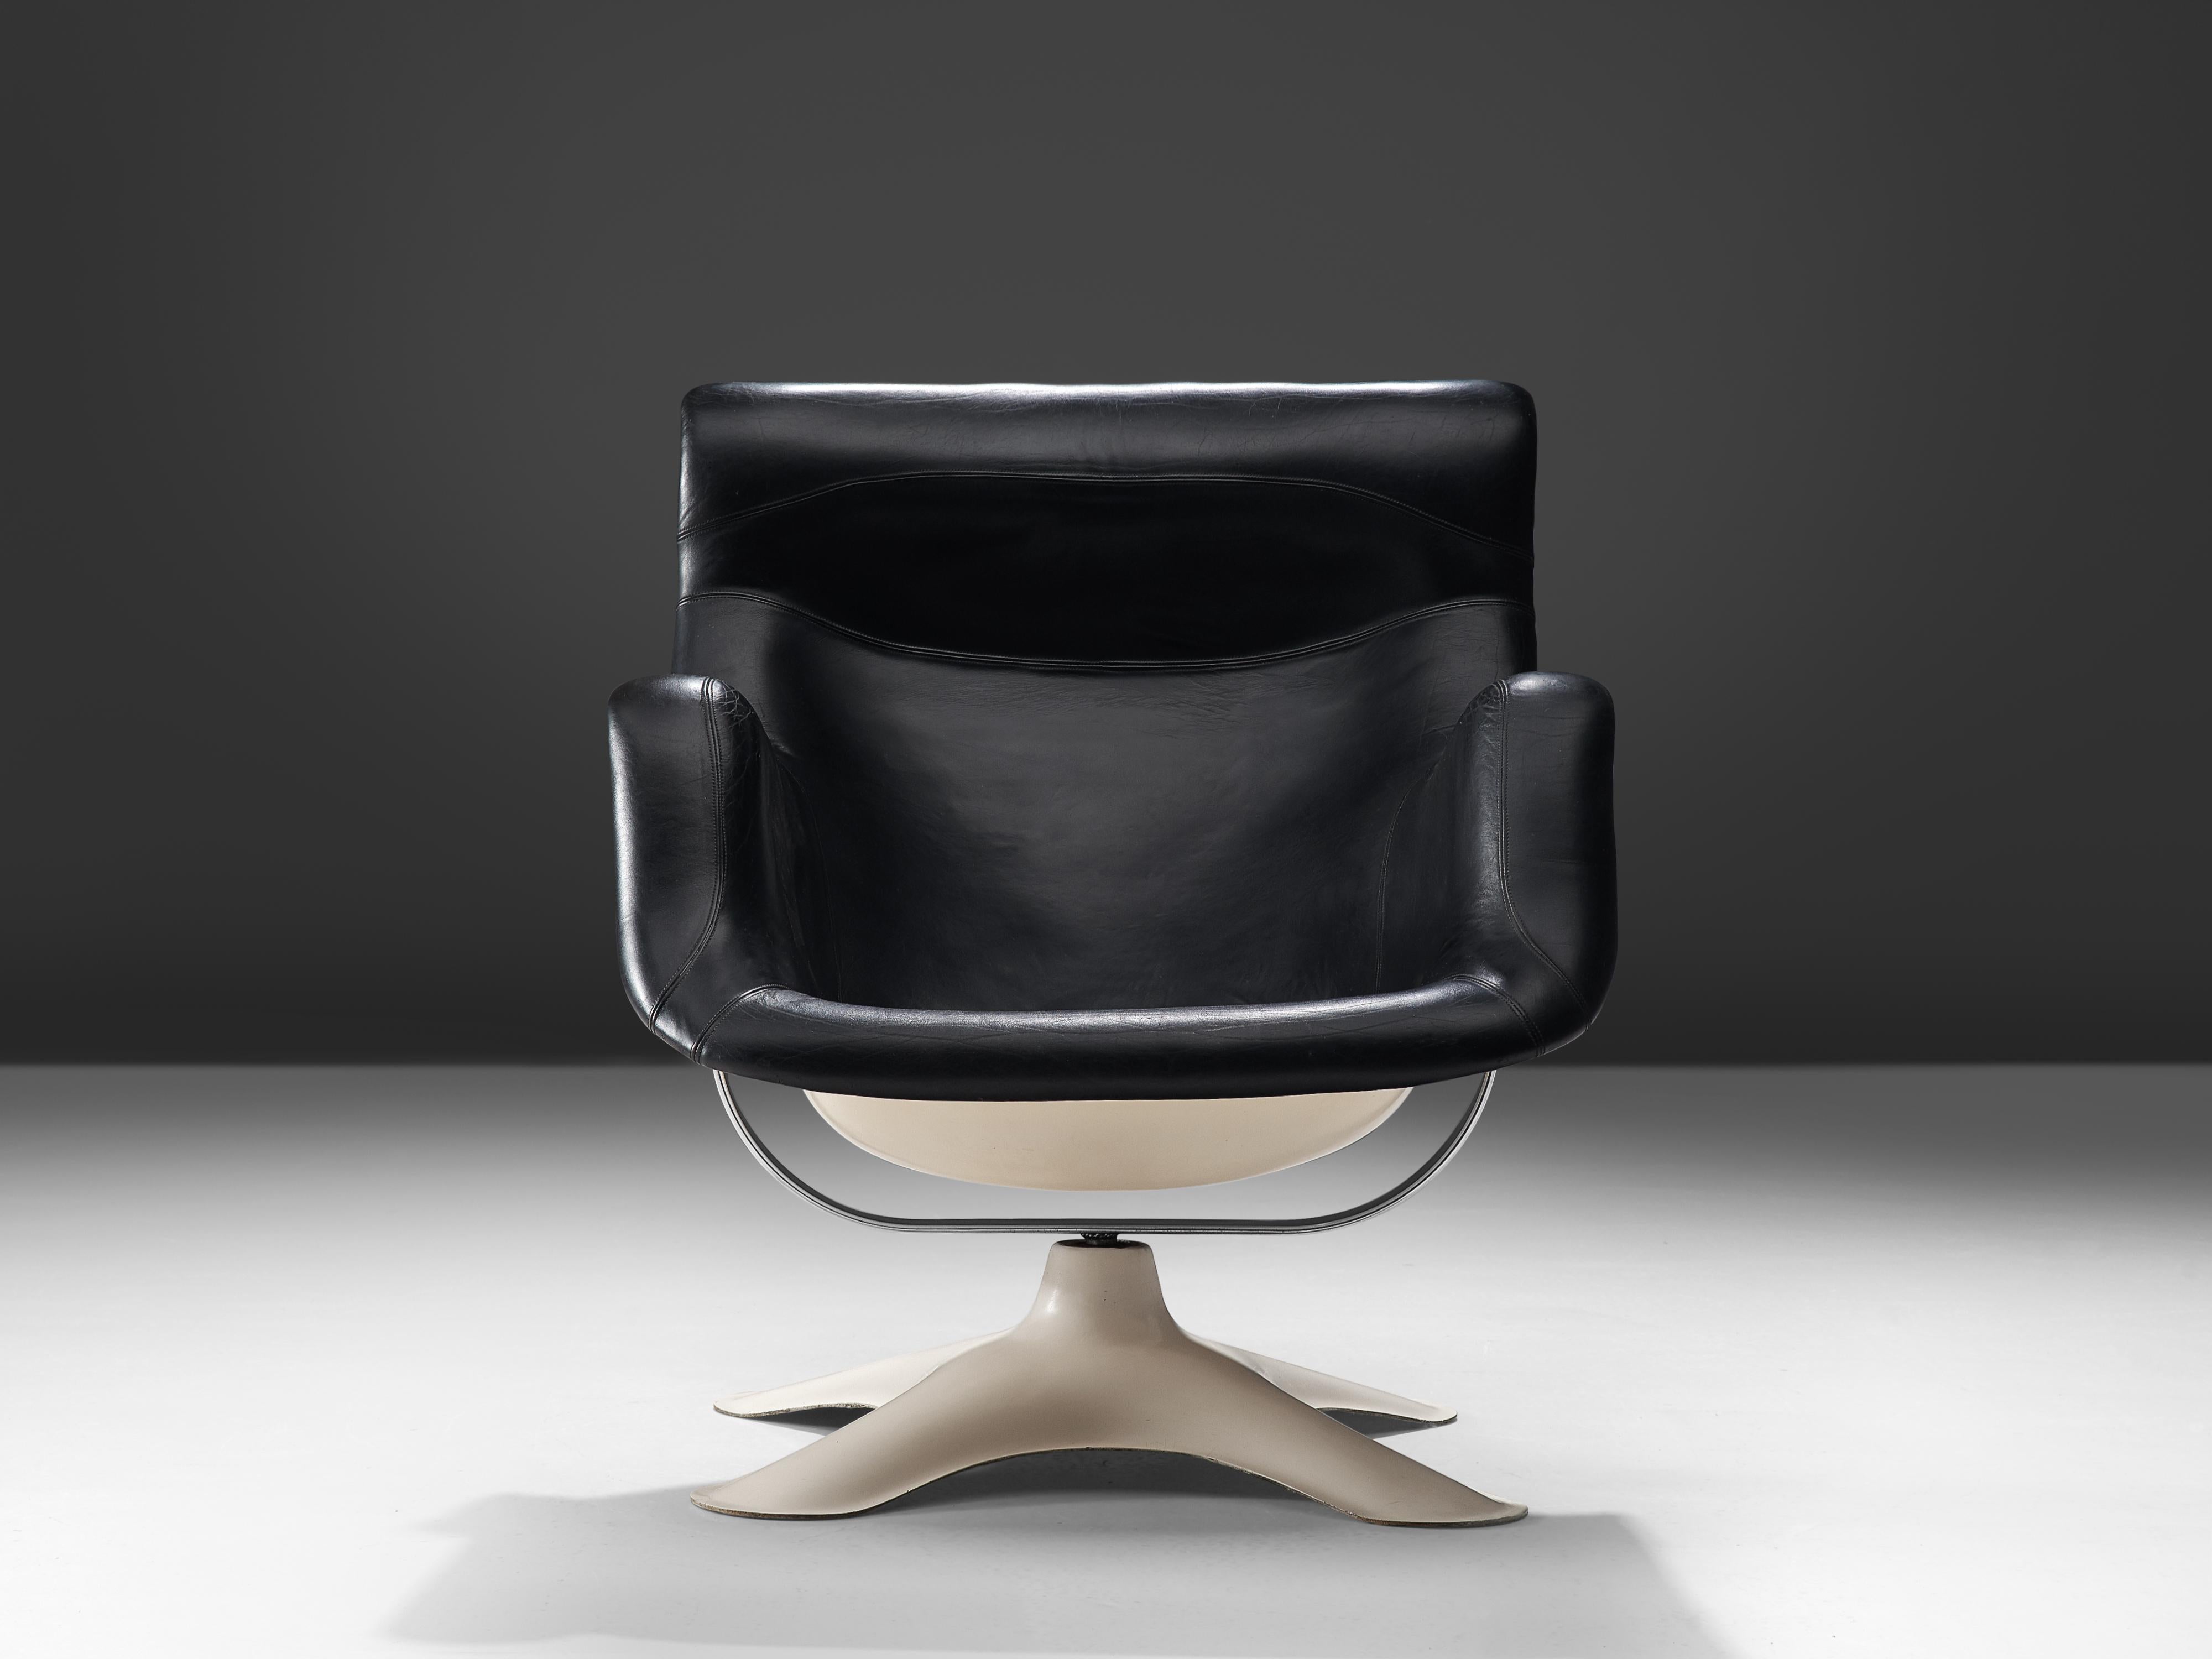 Metal Yrjo Kukkapuro 'Karuselli' Lounge Chair in Black Leather Upholstery